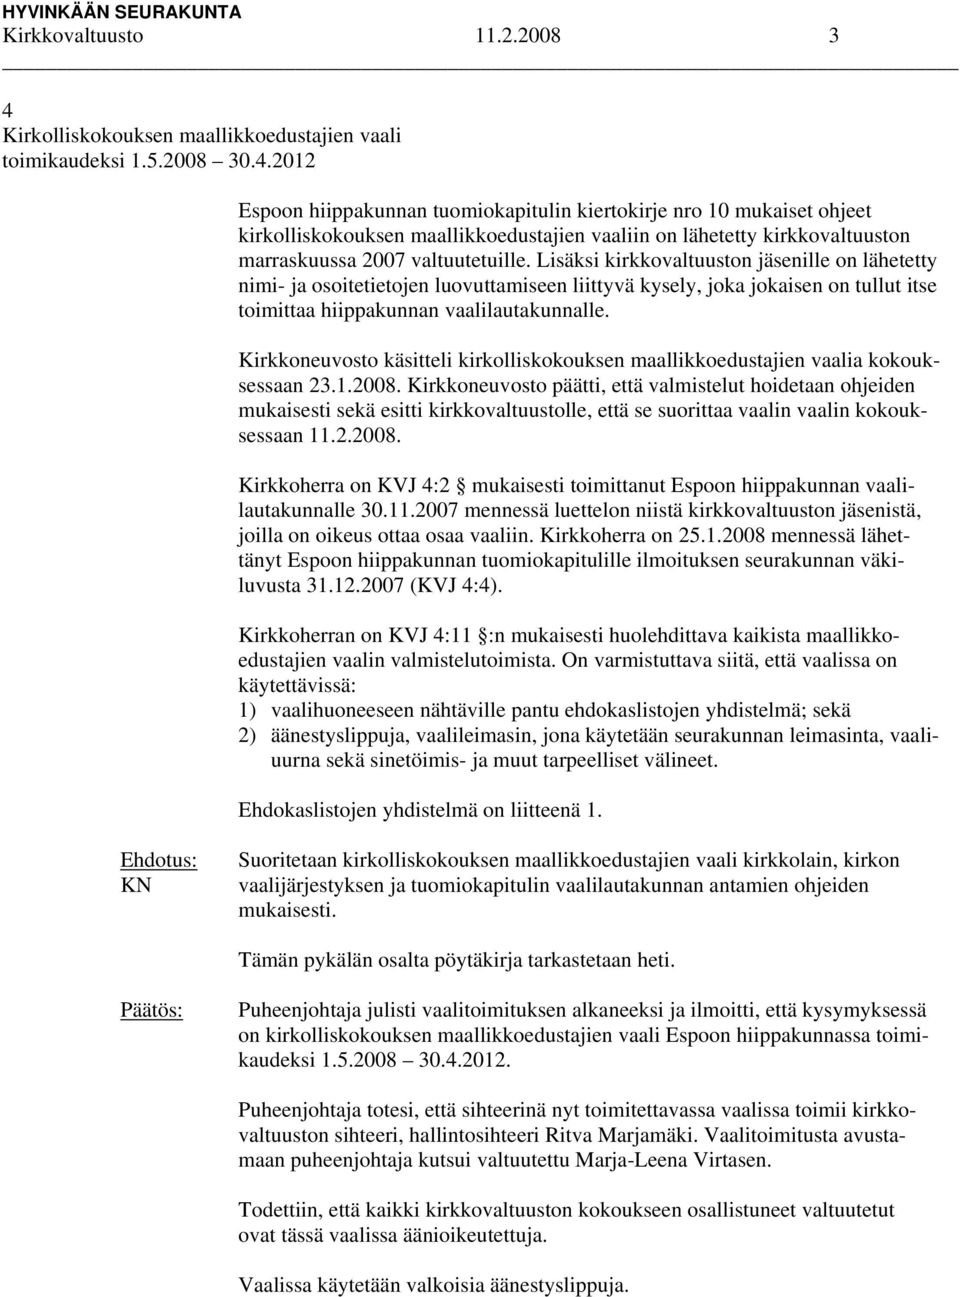 2012 Espoon hiippakunnan tuomiokapitulin kiertokirje nro 10 mukaiset ohjeet kirkolliskokouksen maallikkoedustajien vaaliin on lähetetty kirkkovaltuuston marraskuussa 2007 valtuutetuille.